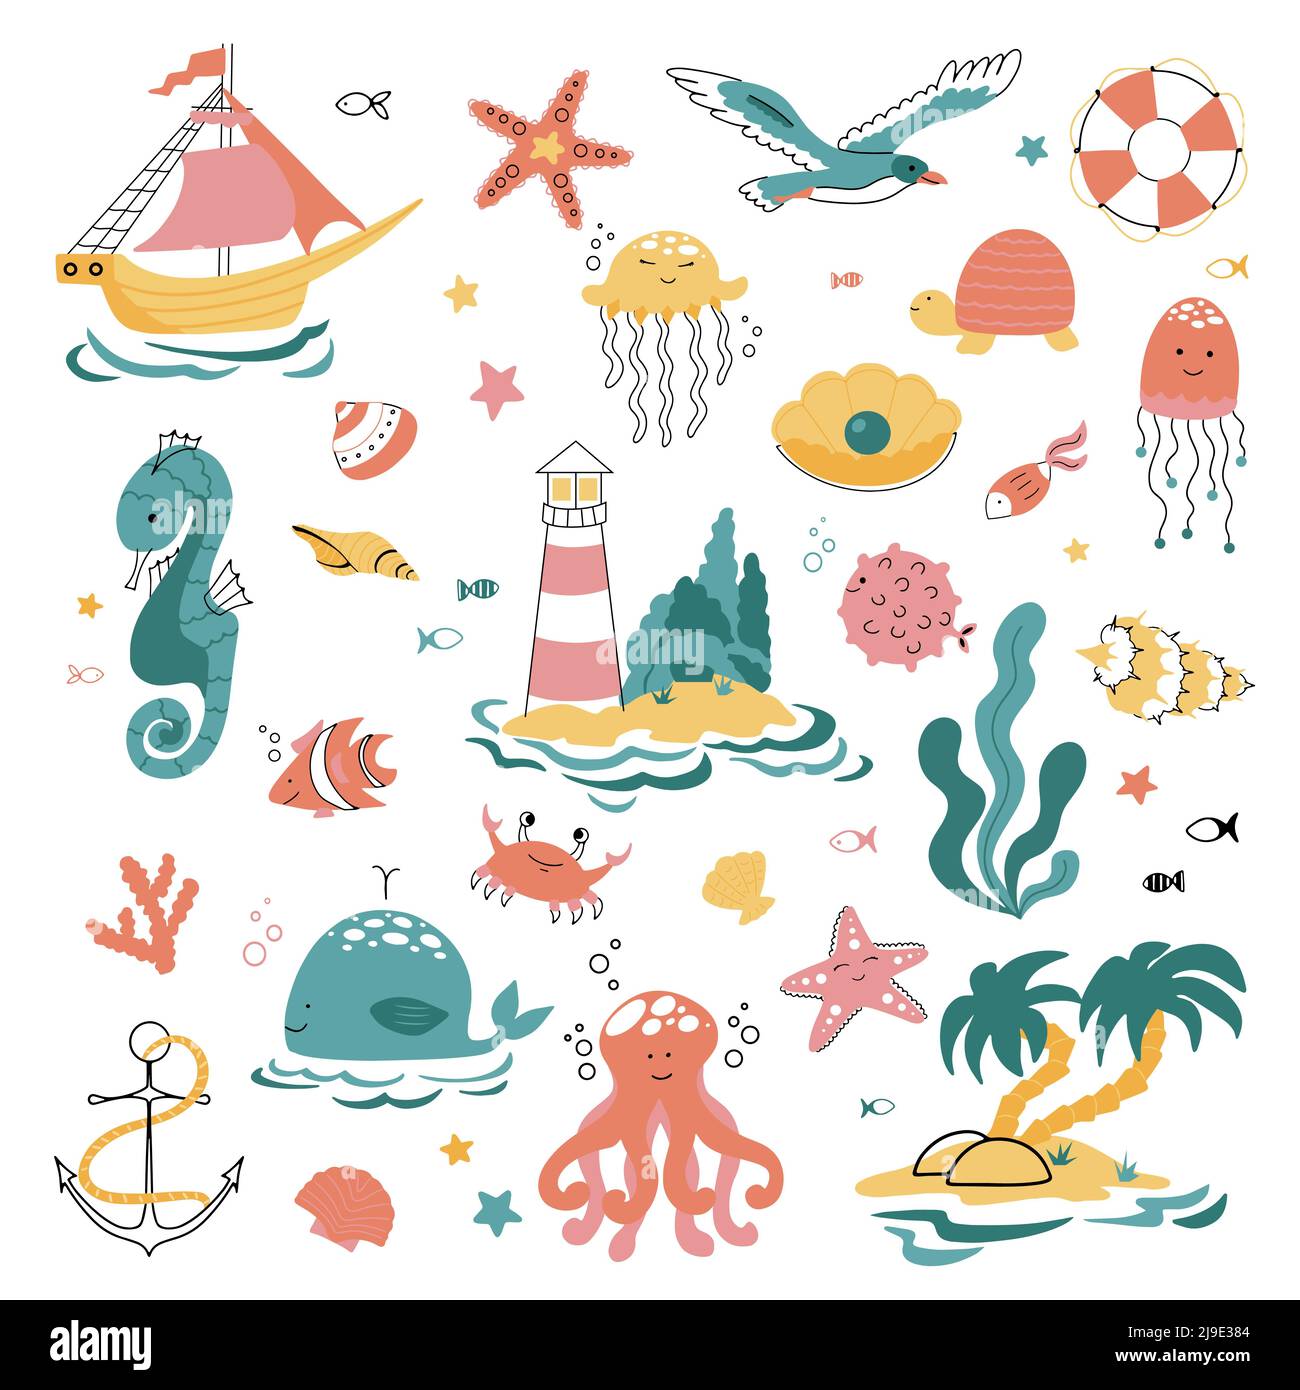 Grand sur le thème de la mer, de l'océan et de la vie marine dans le style des gribouillages Illustration de Vecteur